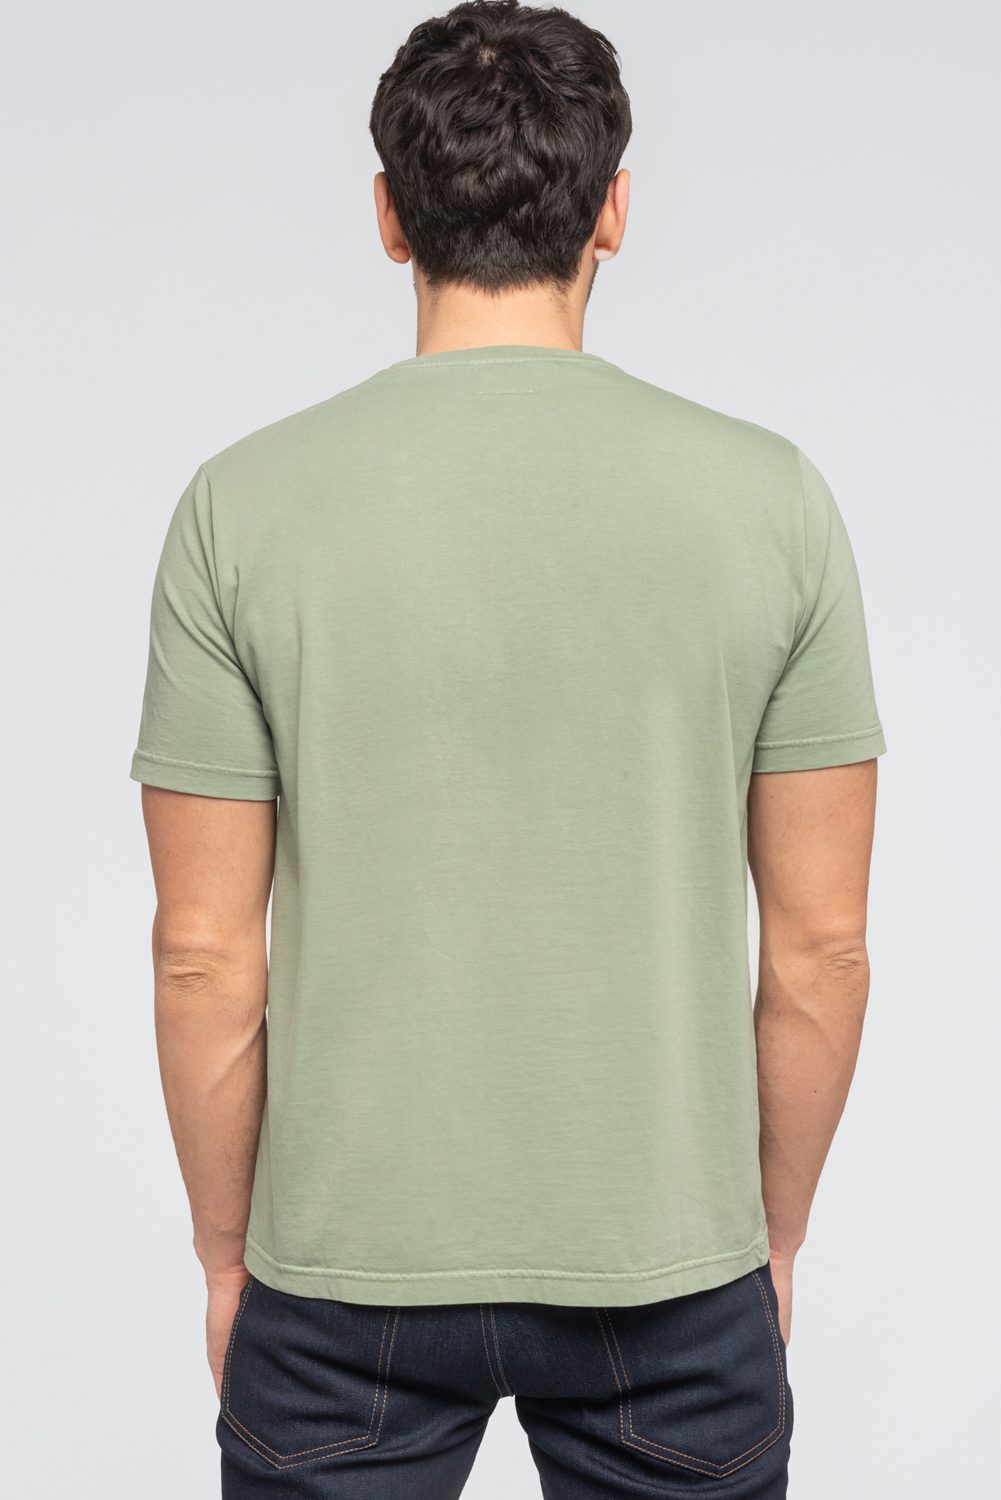 KIBO - T-shirt 100% Coton BIO - VERT